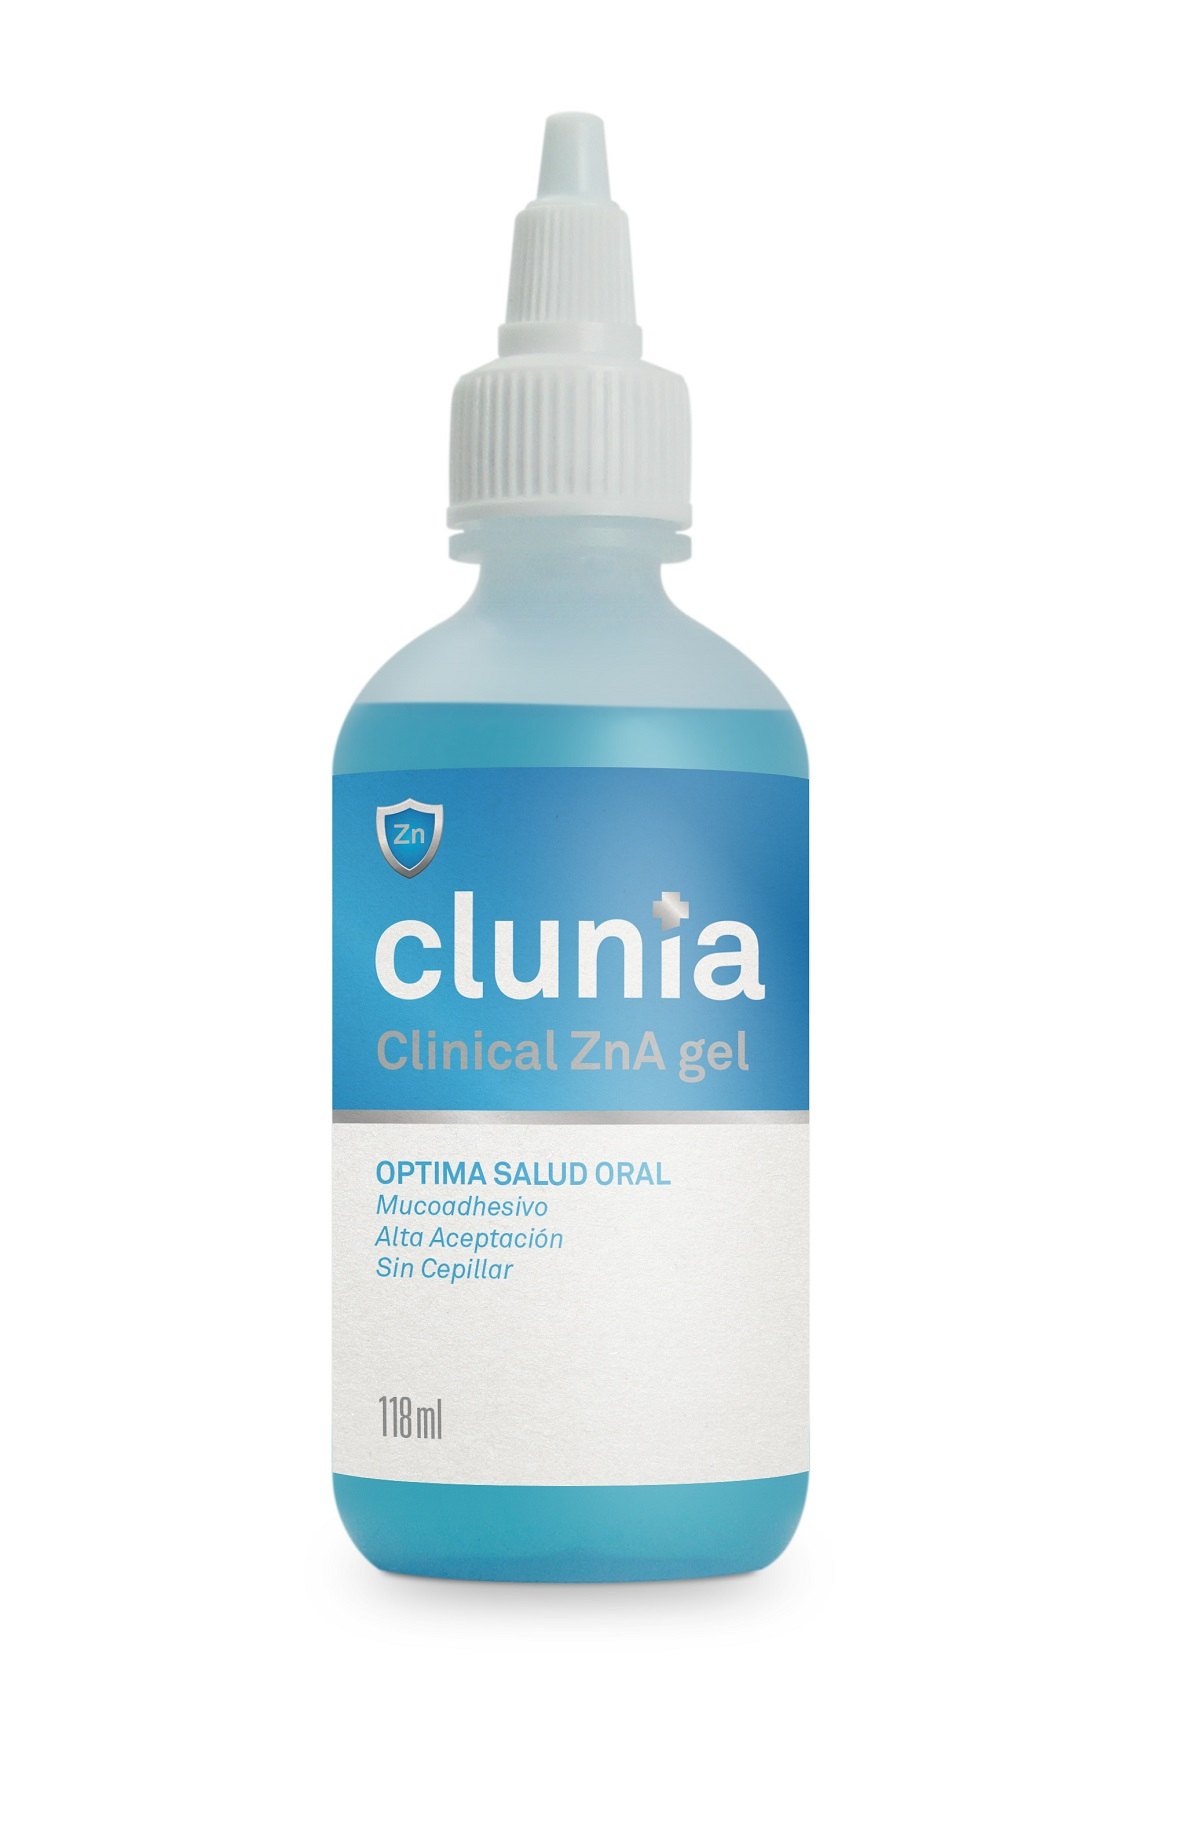 CLUNIA Zn-A Clinical Gel per cane, gatto, cavallo e altri animali